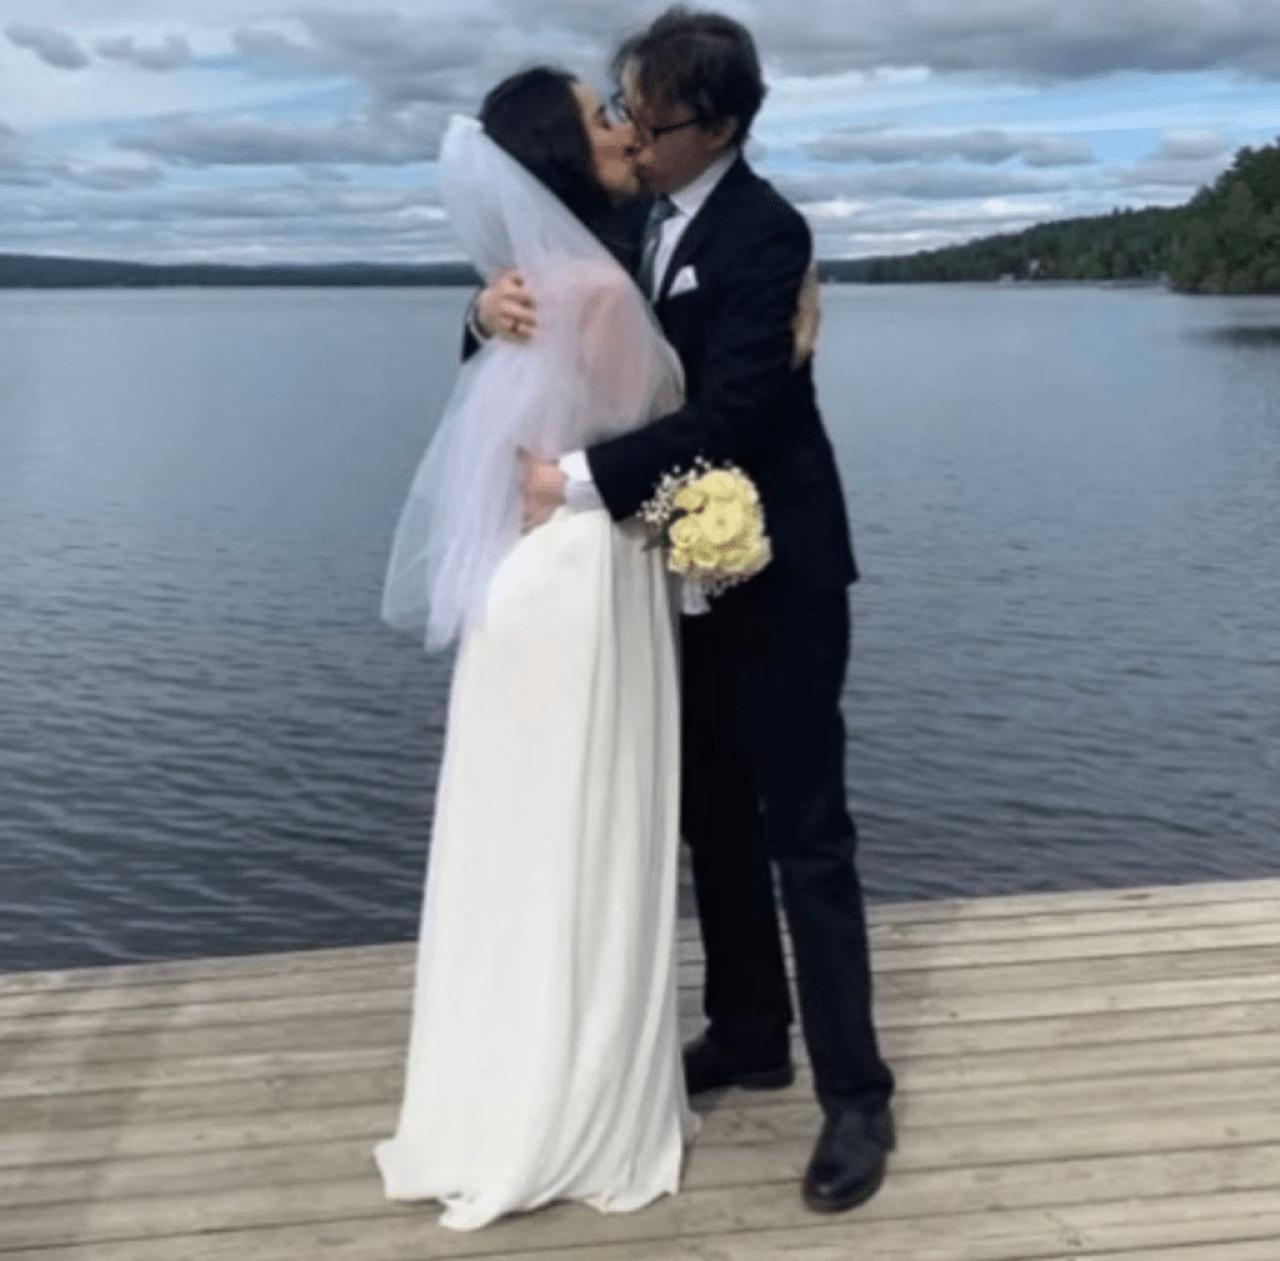 Vjenčanje u Švedskoj - Ljubavna priča koja pomiče granice: Kako je YouTube video promijenio život i spojio dvoje ljudi